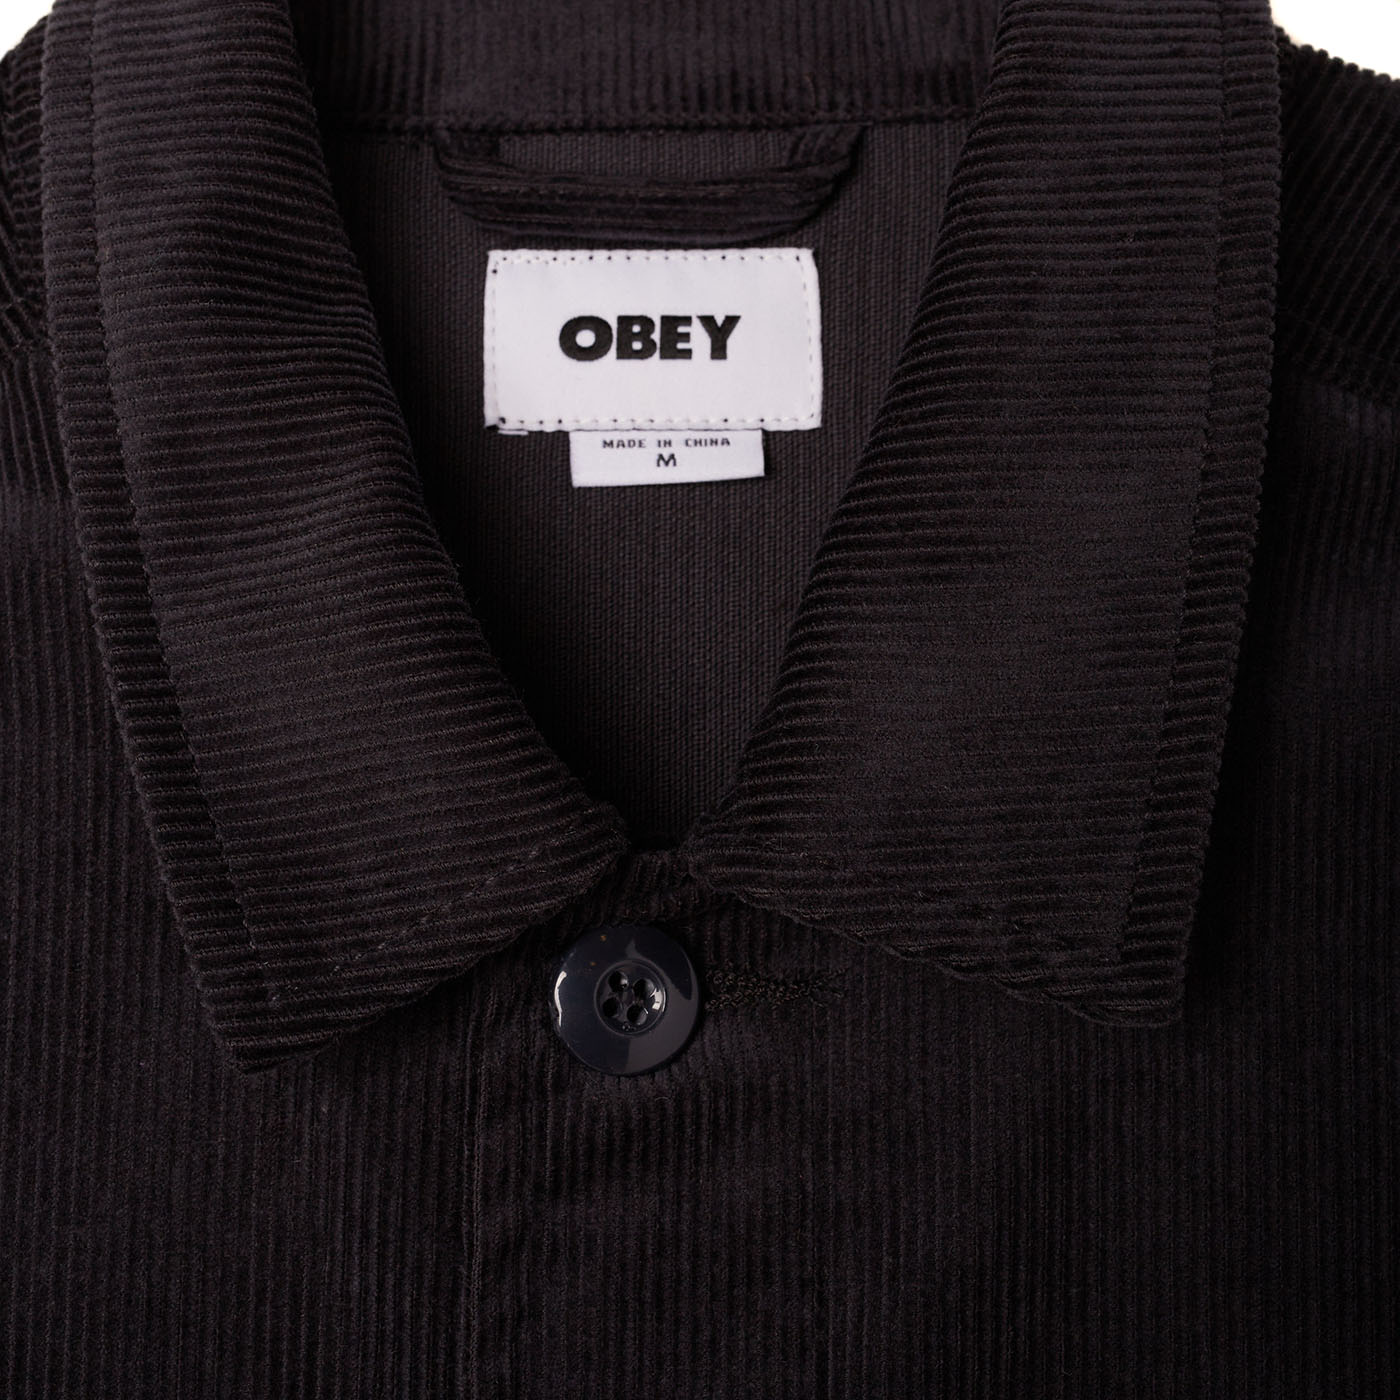 OBEY - Marquee Men's Shirt Jacket, Dark Springs